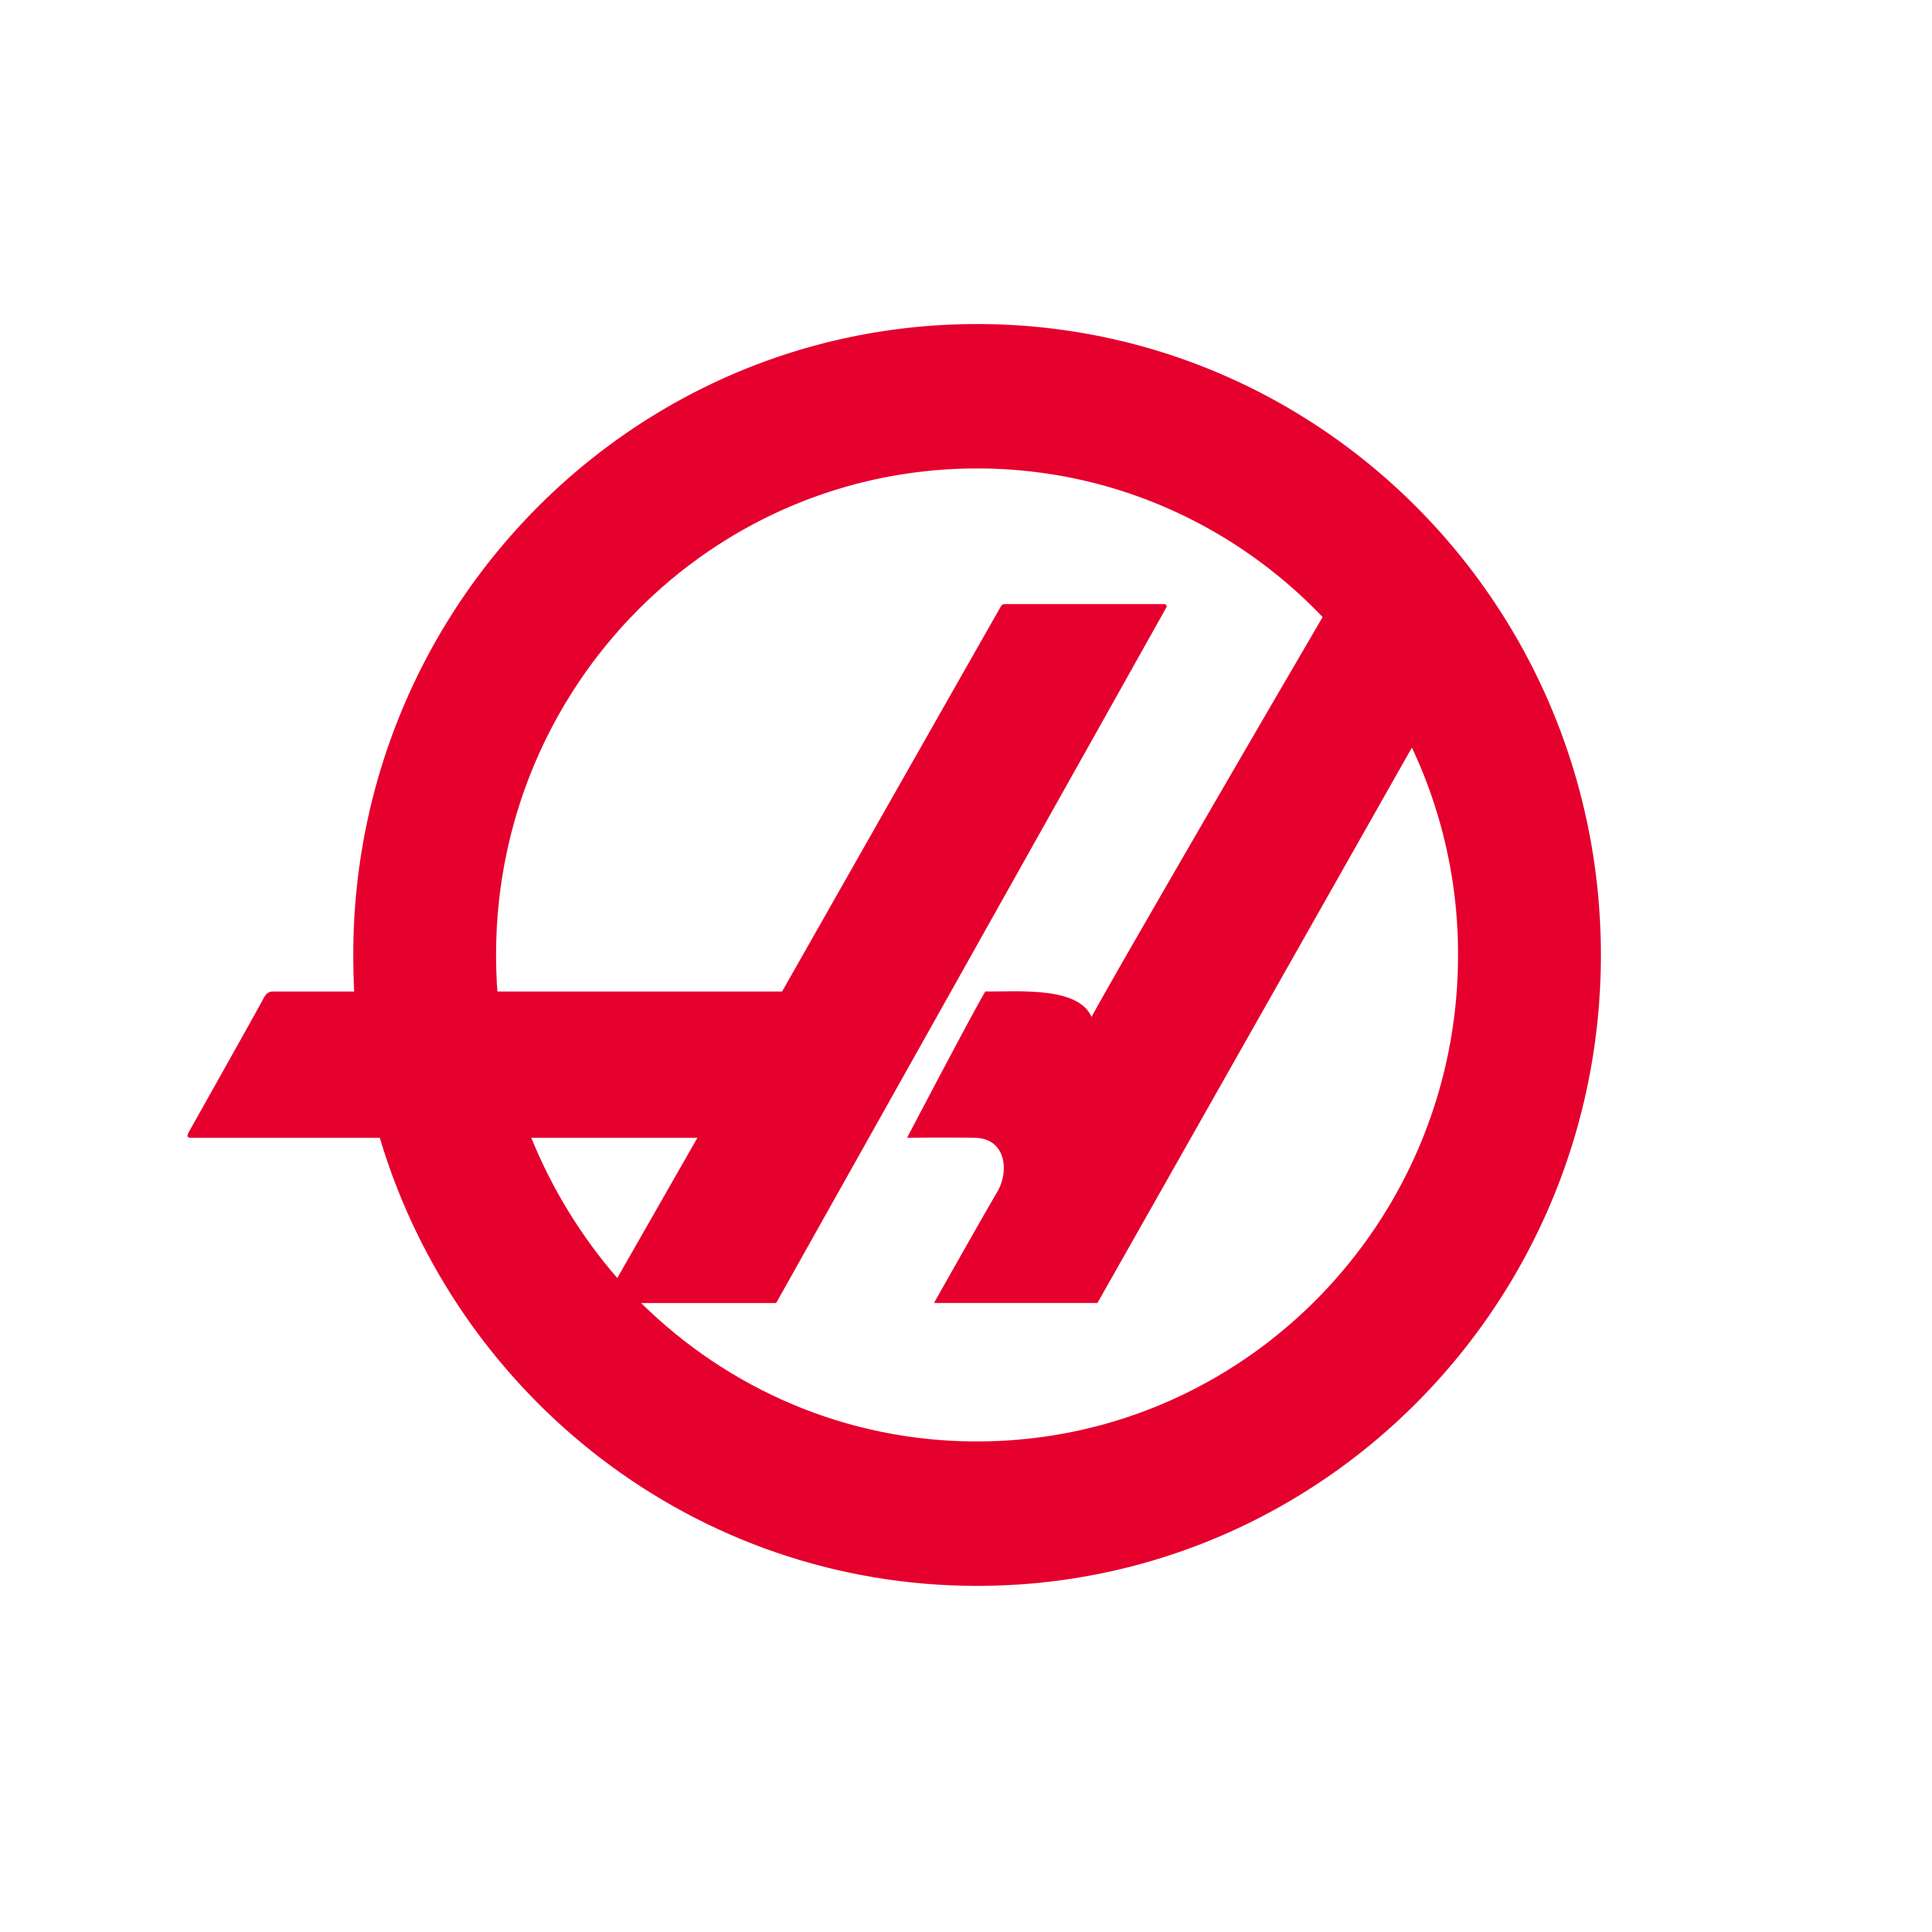 haas f1 team logo 0 - Haas F1 Team Logo